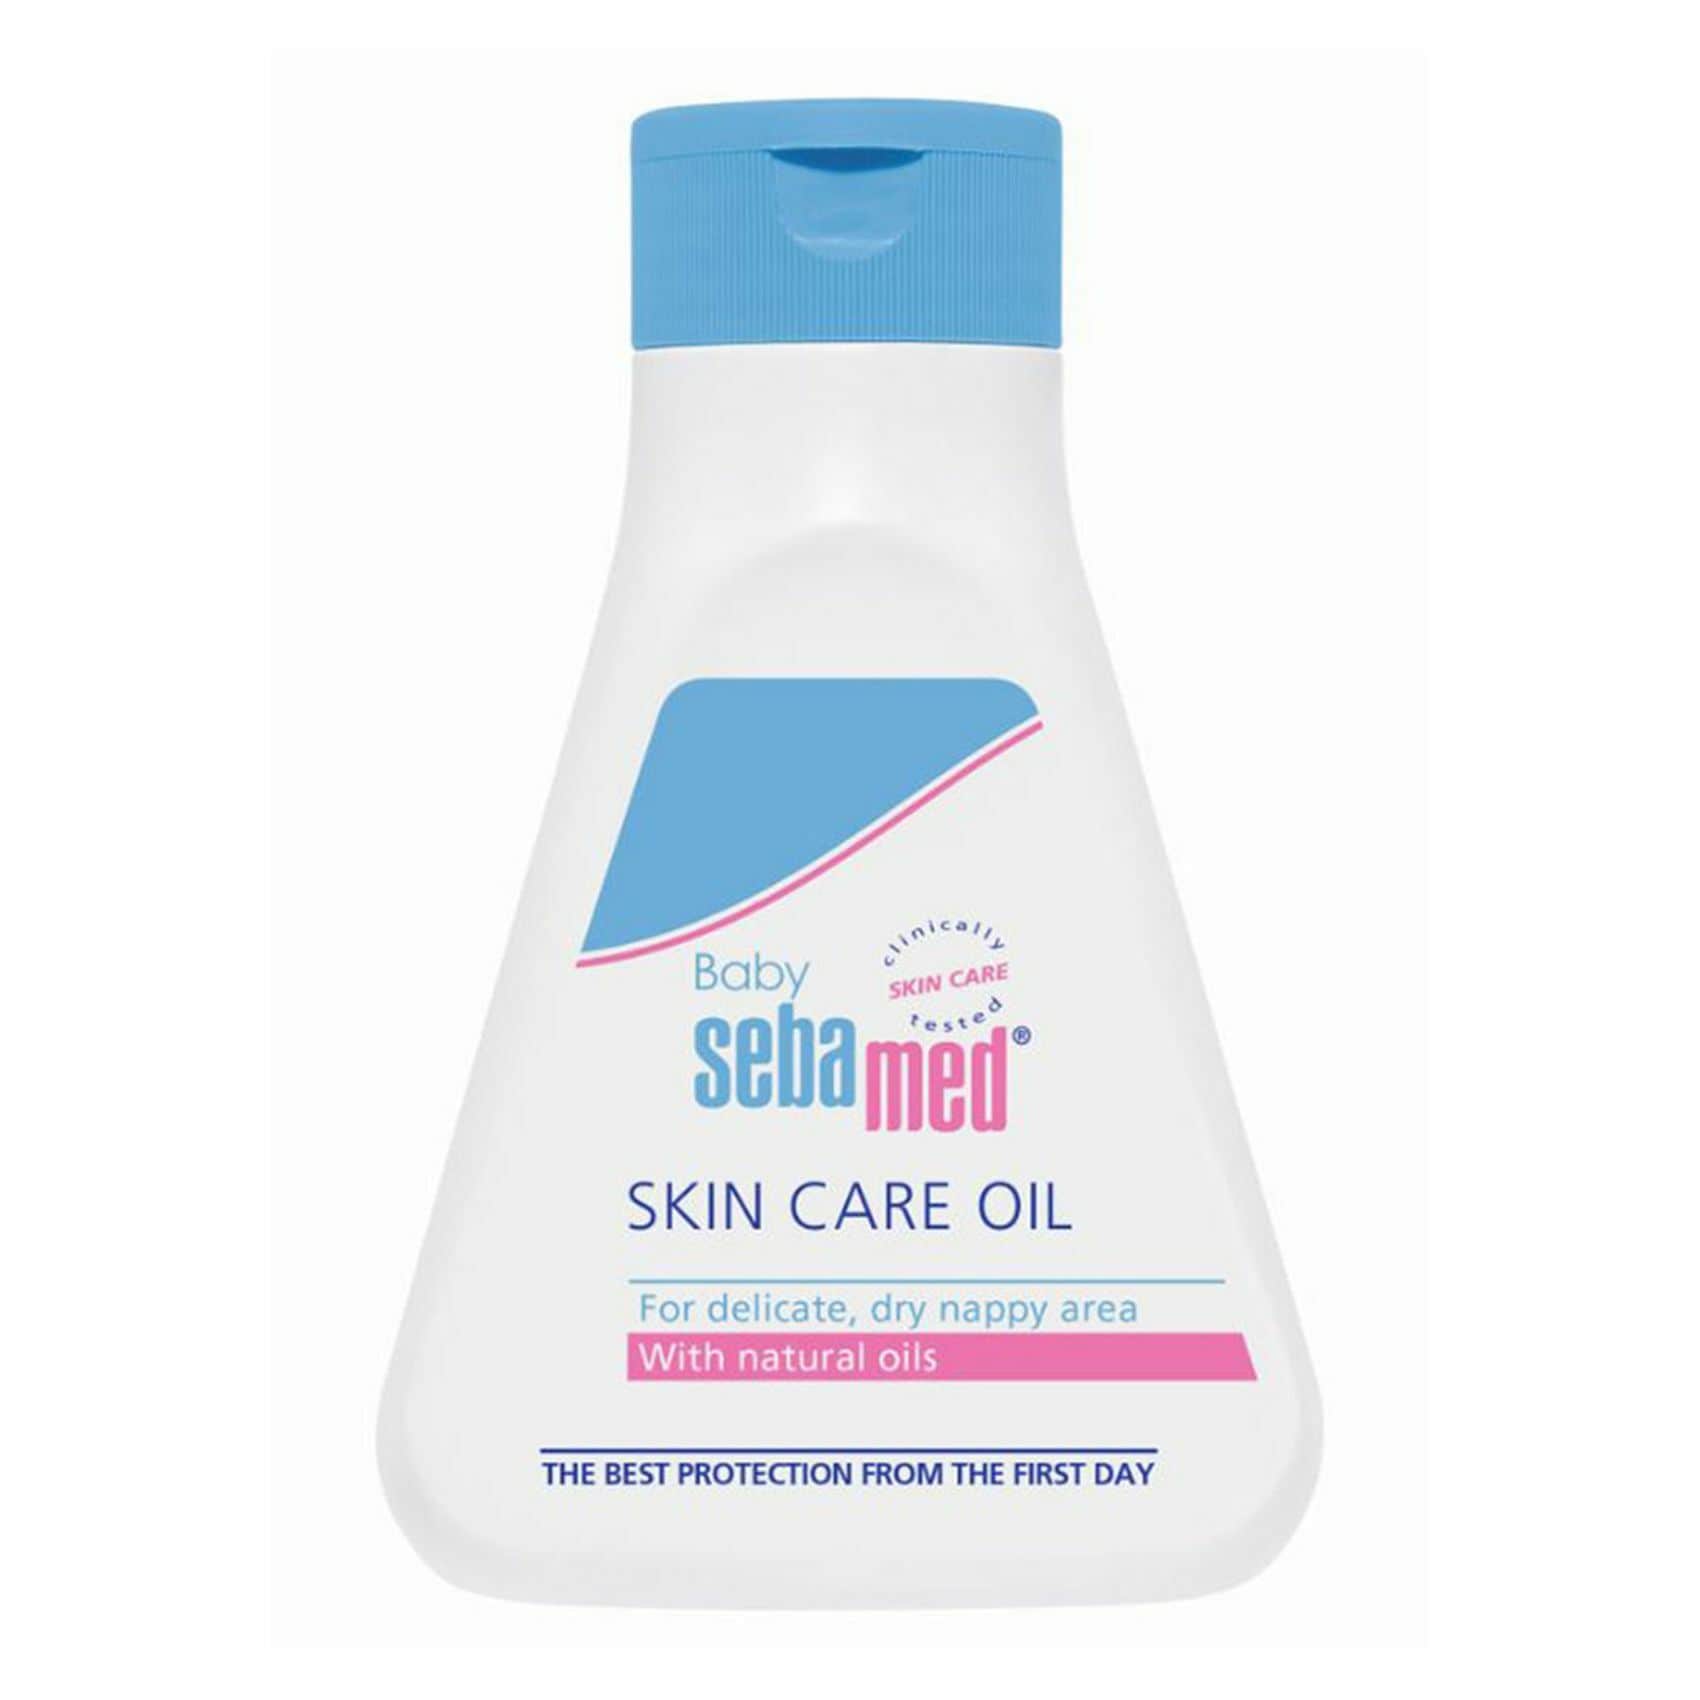 Sebamed Skin Care Oil 150ml Home